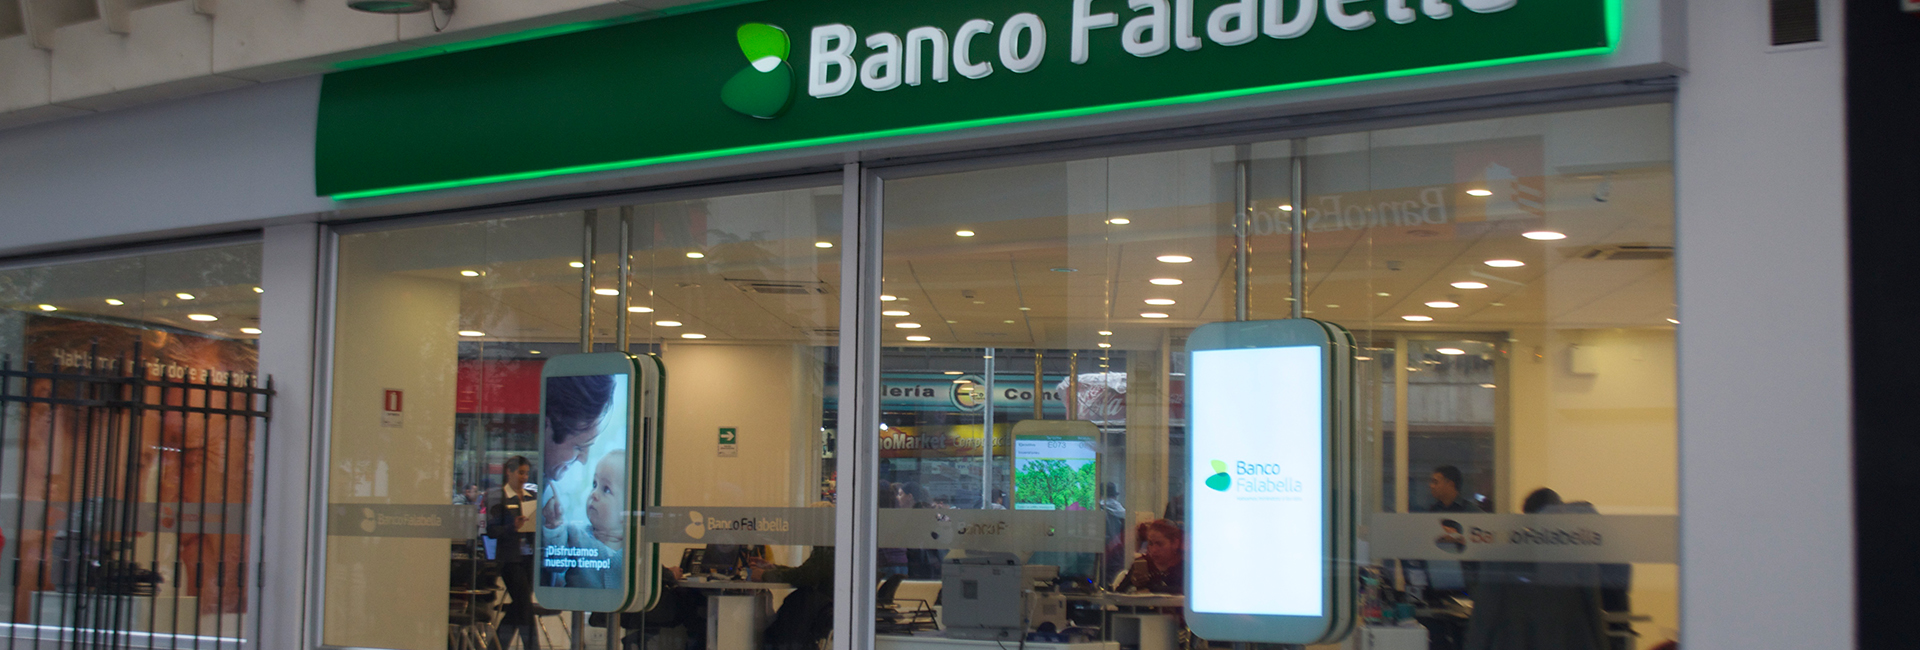 Banco Falabella Ahumada